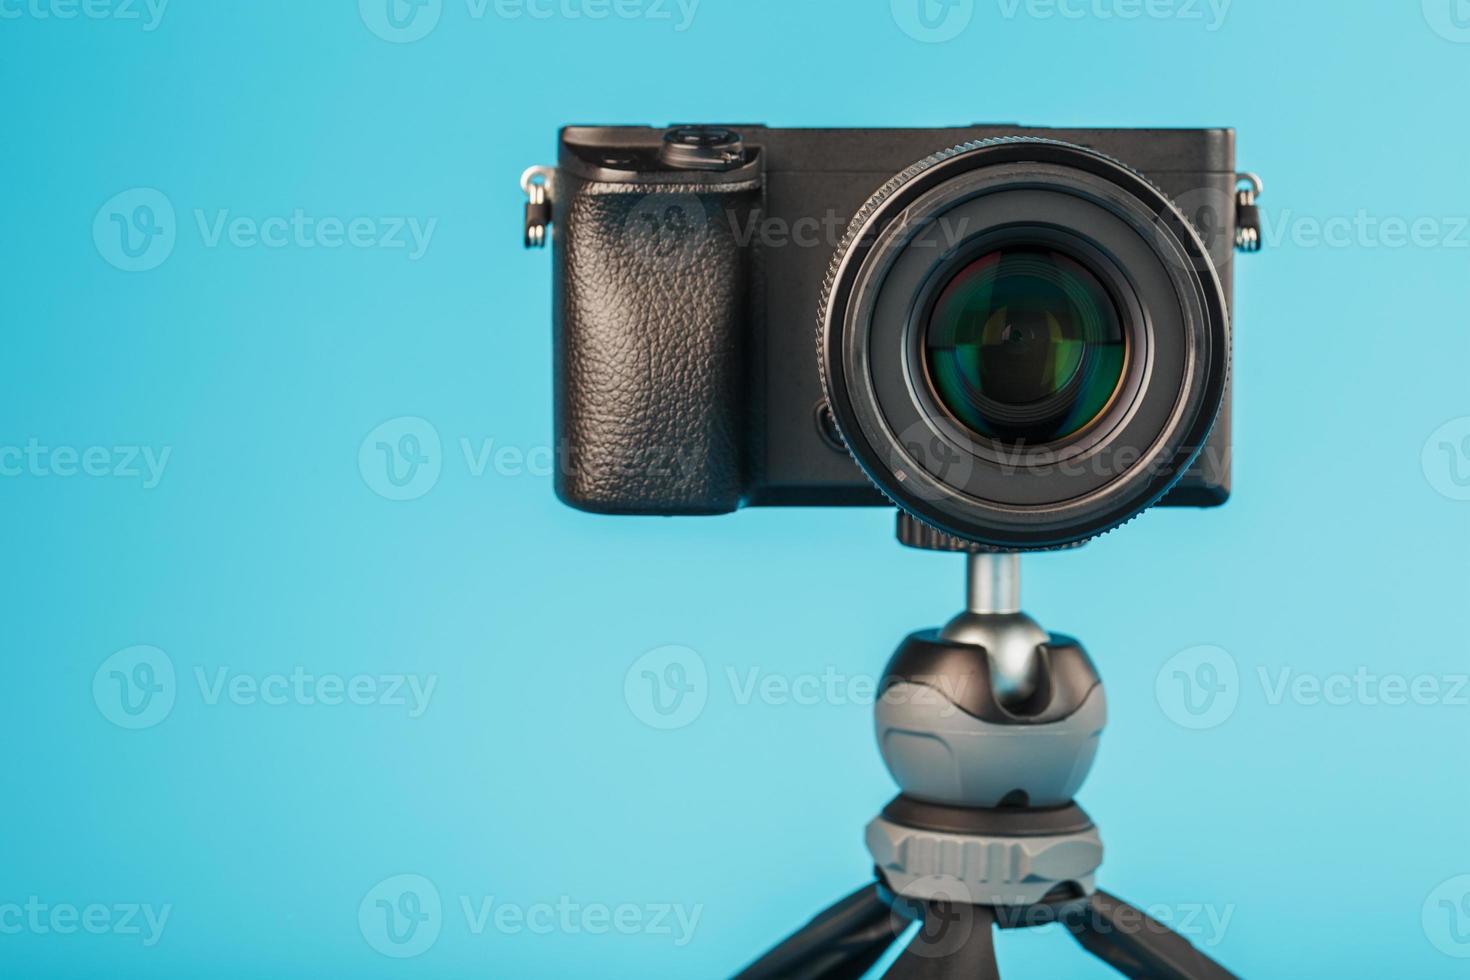 professionelle Kamera auf einem Stativ, auf blauem Hintergrund. Nehmen Sie Videos und Fotos für Ihren Blog oder Bericht auf.